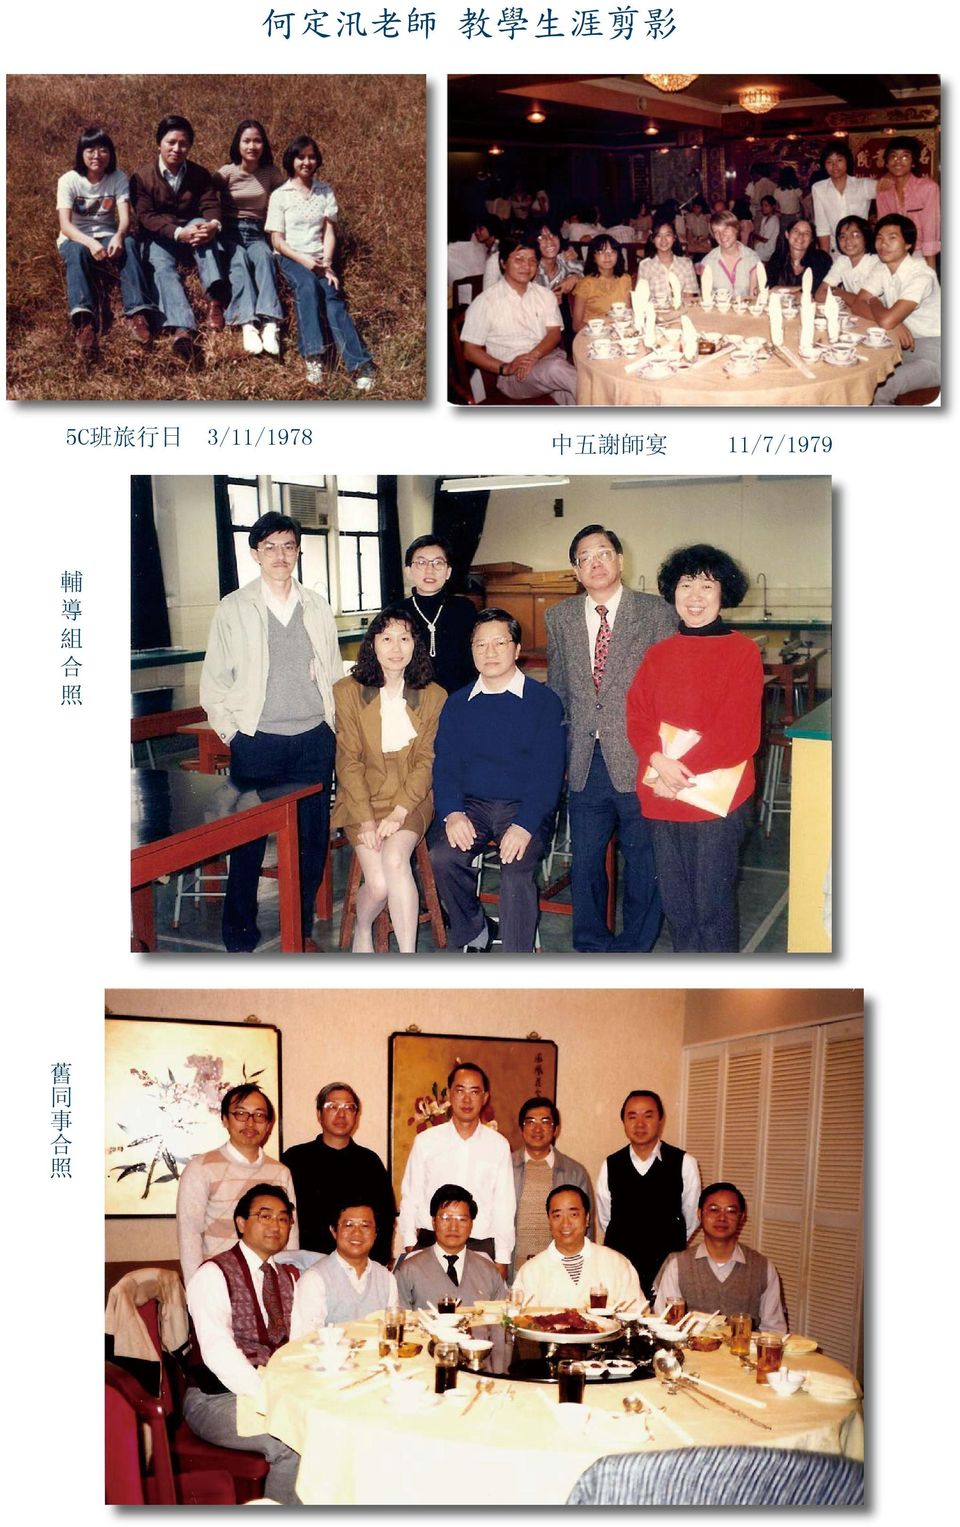 3/11/1978 中 五 謝 師 宴